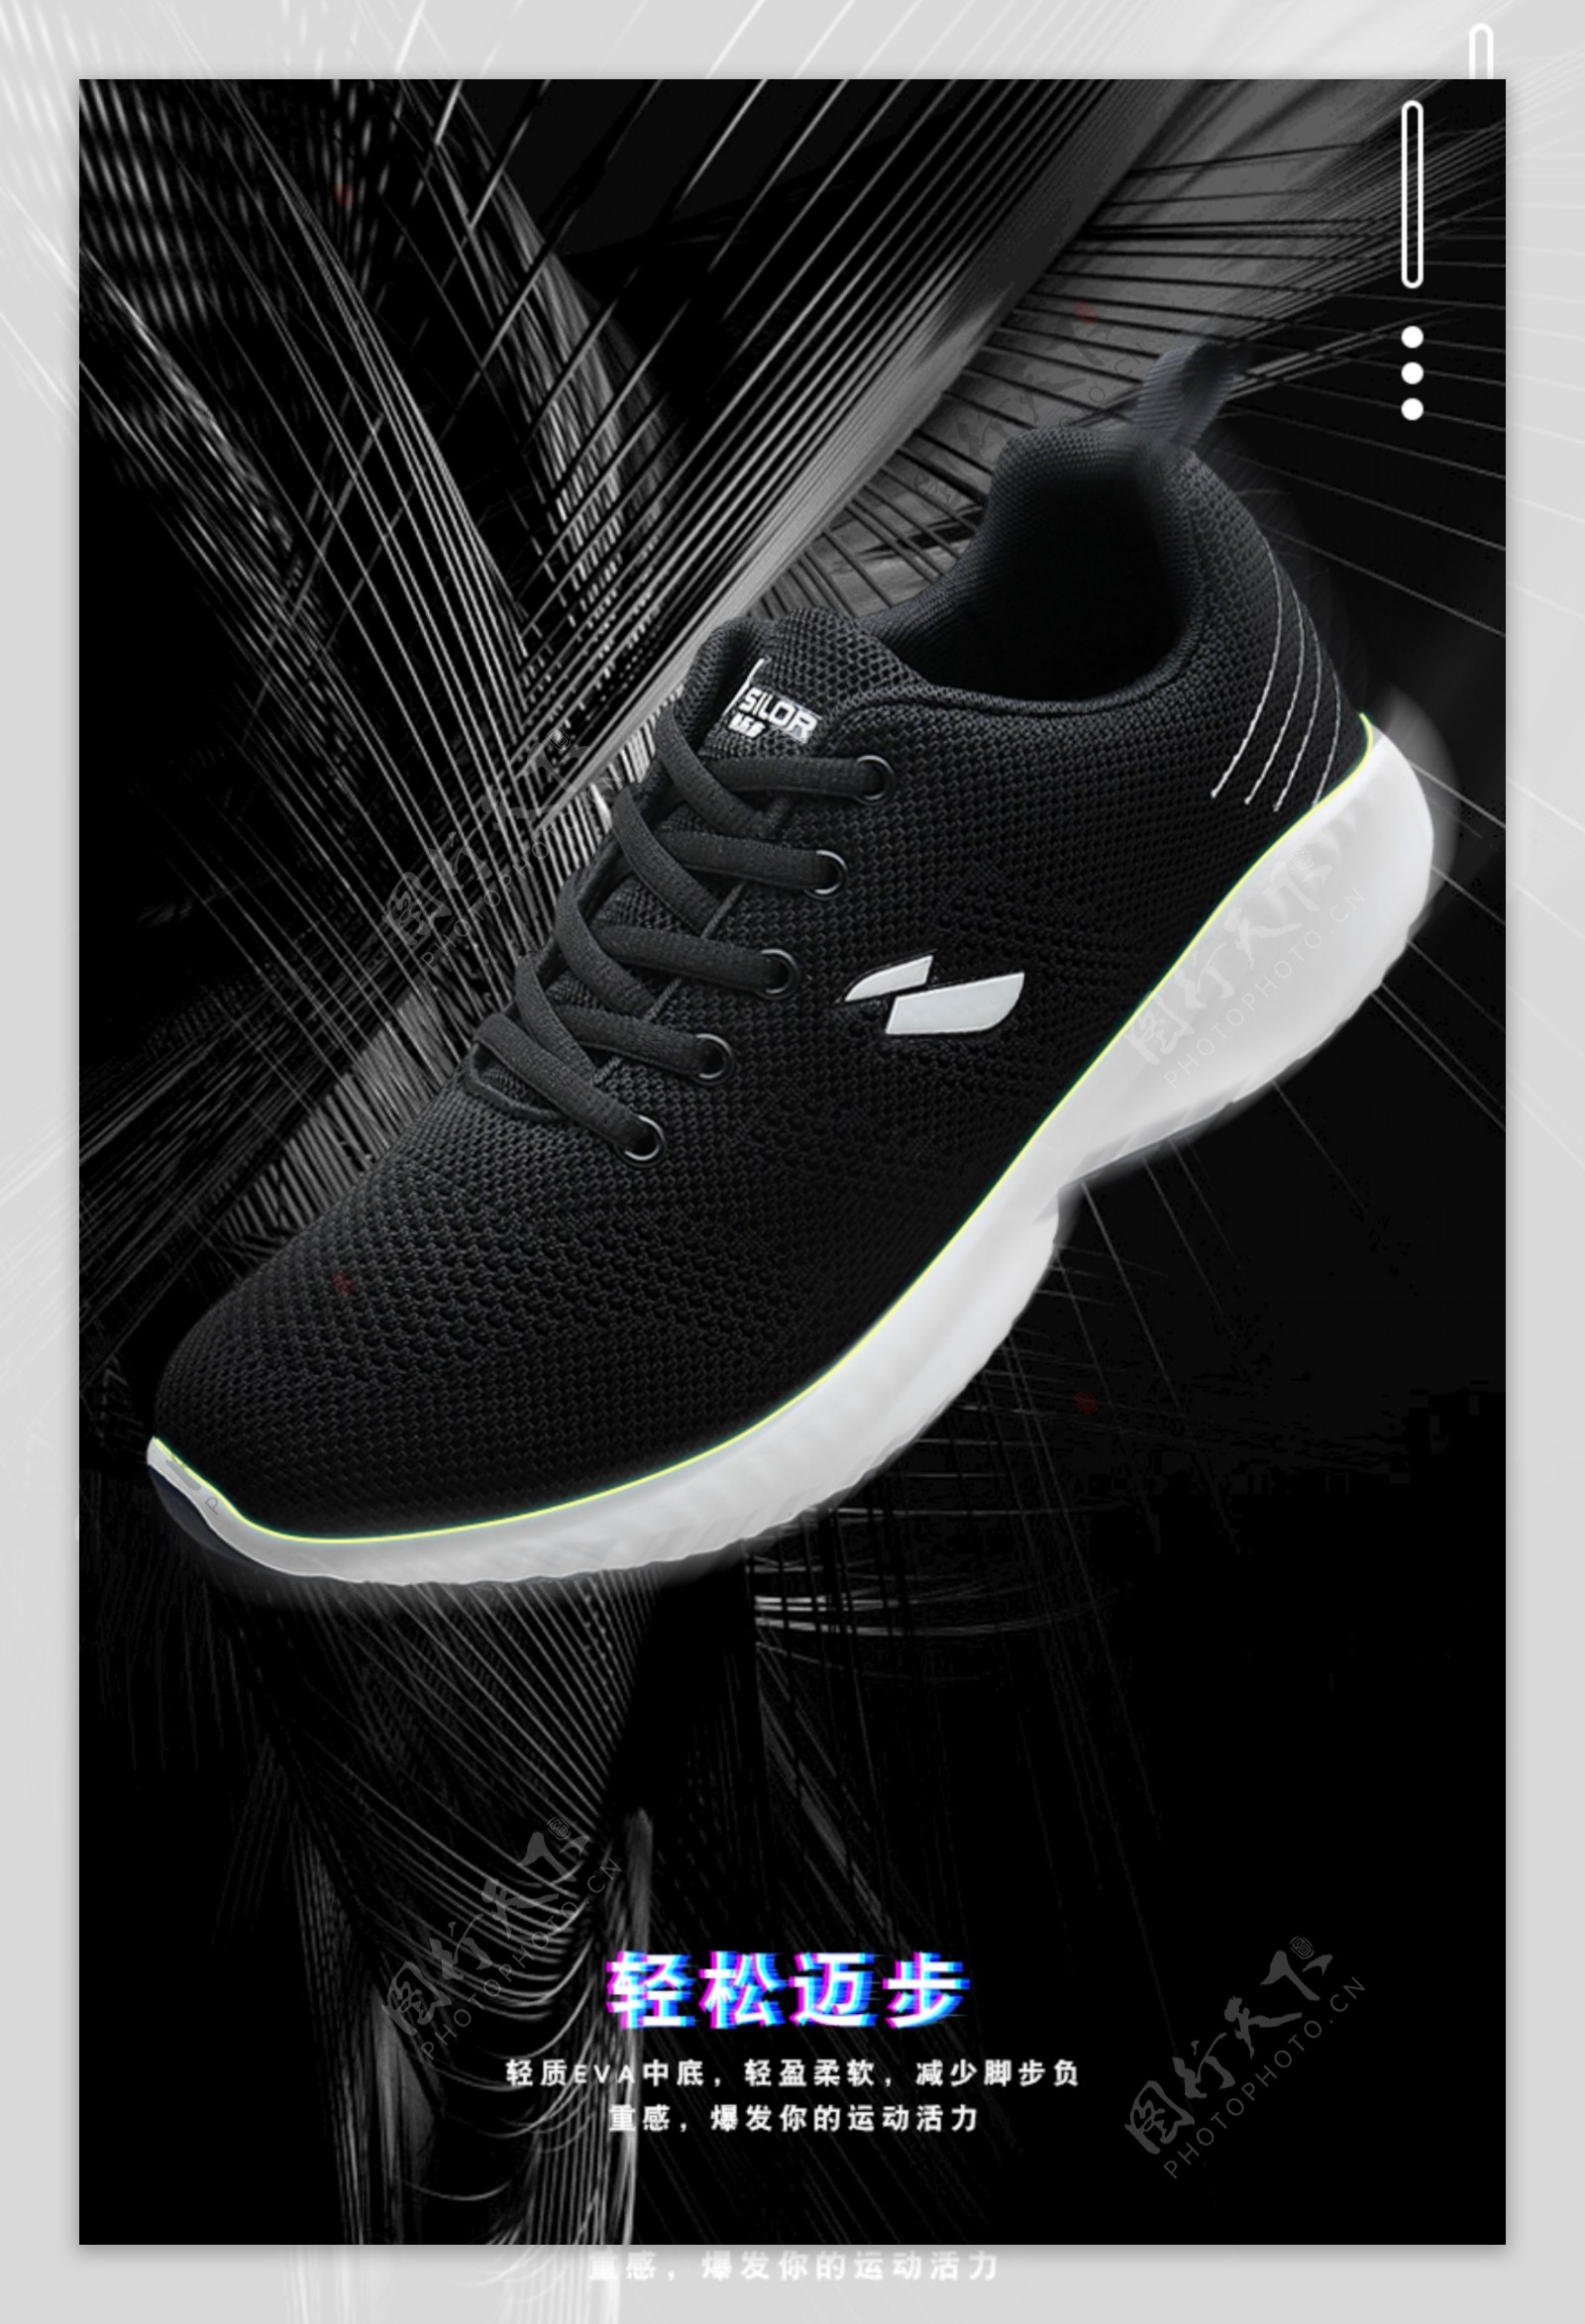 黑色背景运动鞋海报素材设计